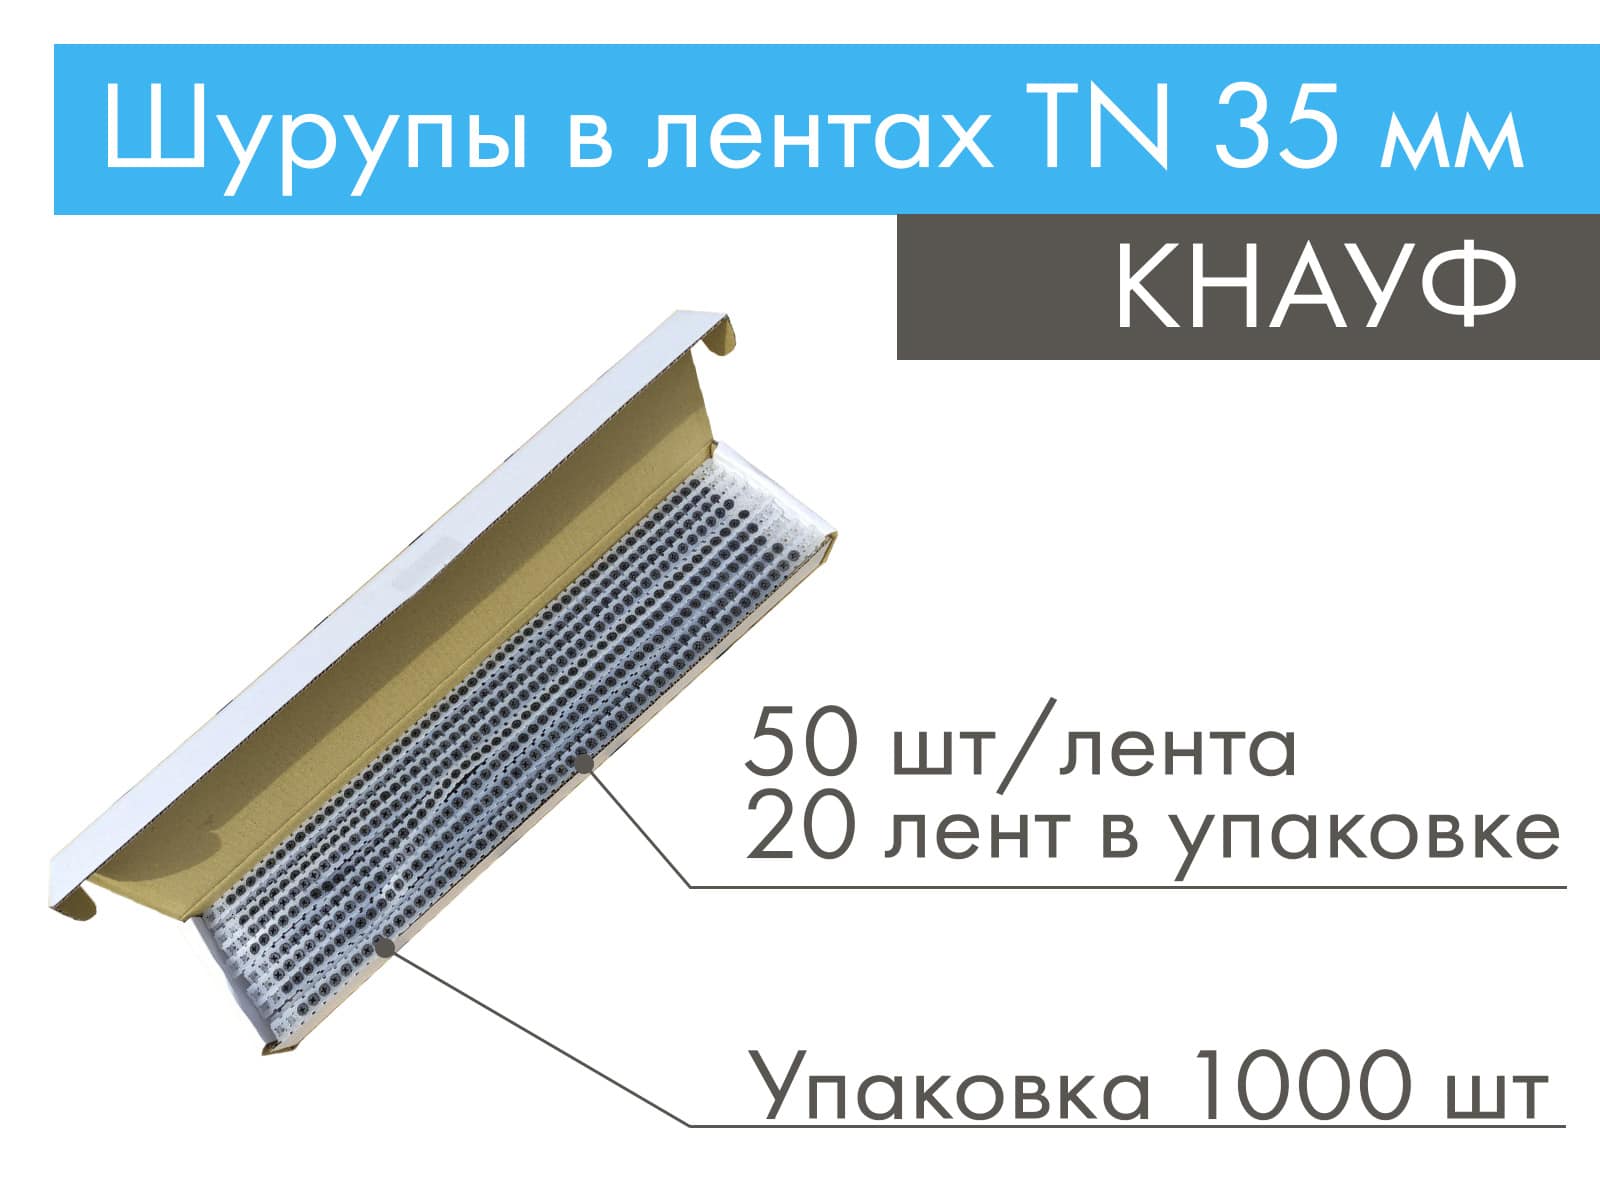 КНАУФ шурупы в лентах TN 35 мм (1000 шт)								